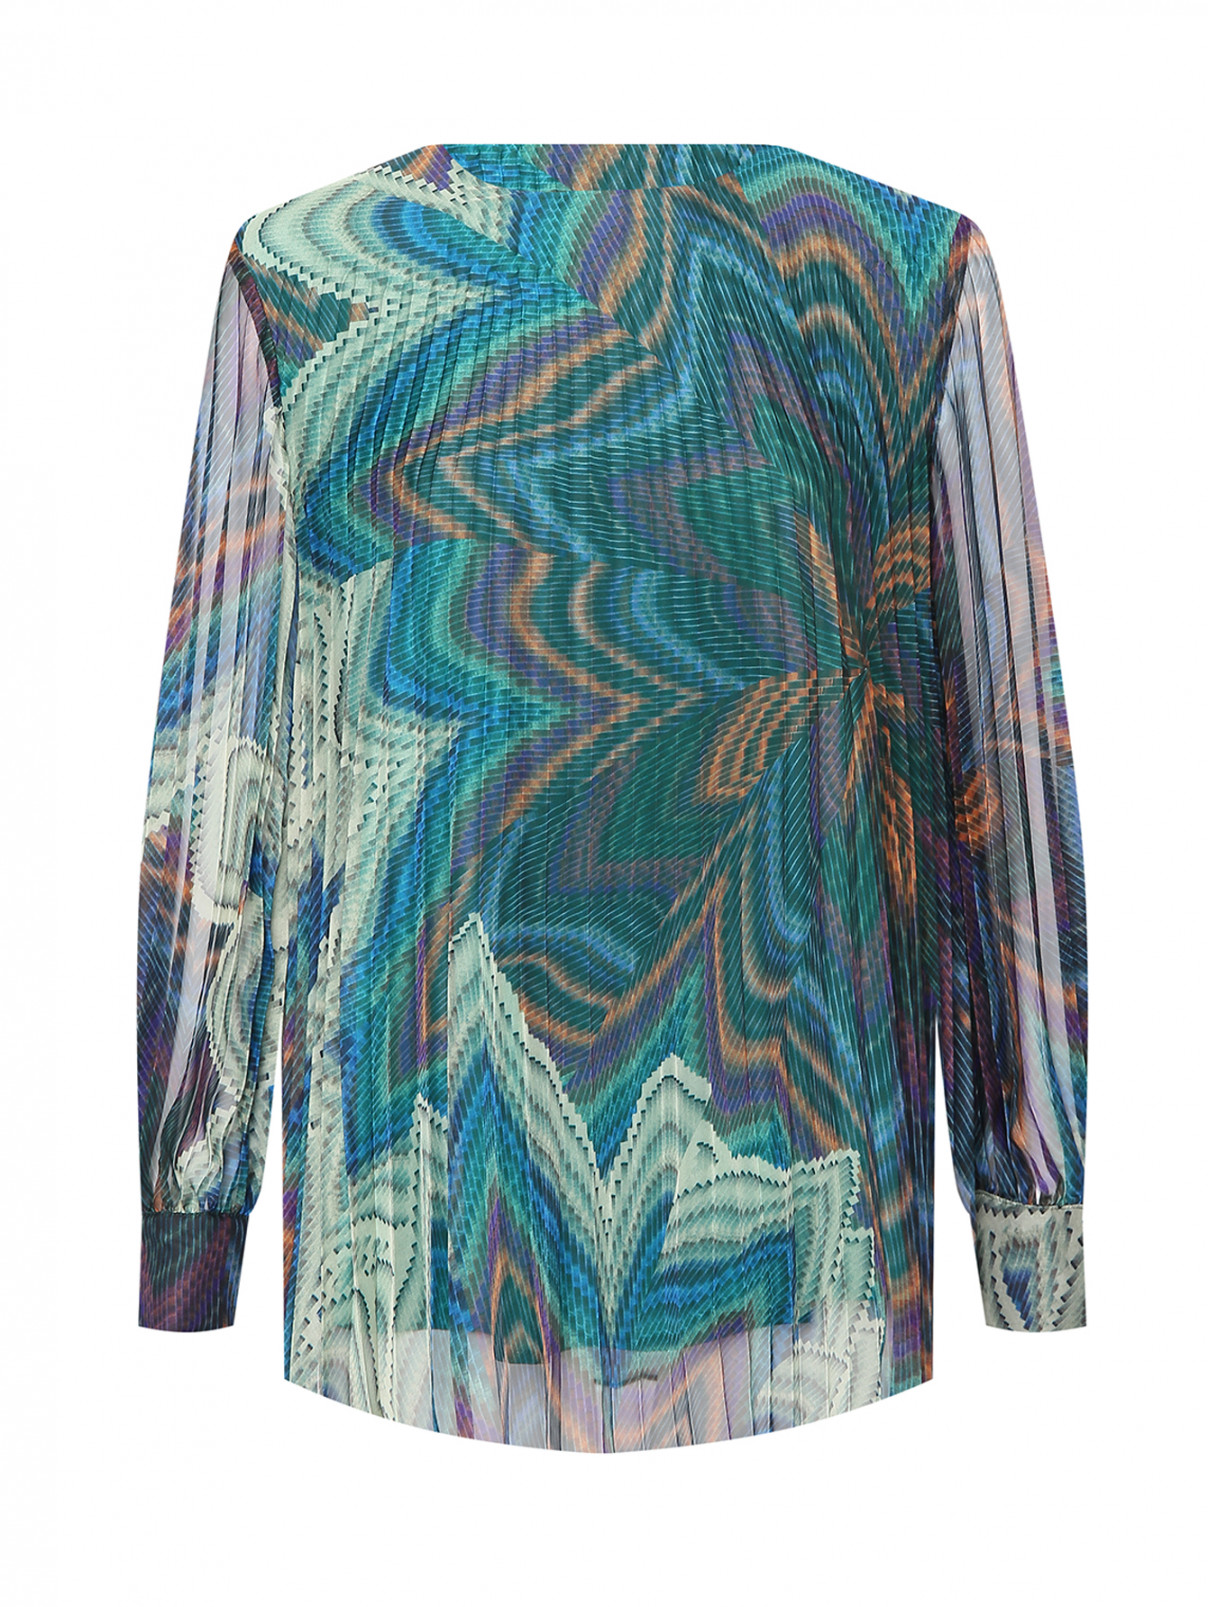 Плиссированная блуза с узором Marina Rinaldi  –  Общий вид  – Цвет:  Узор